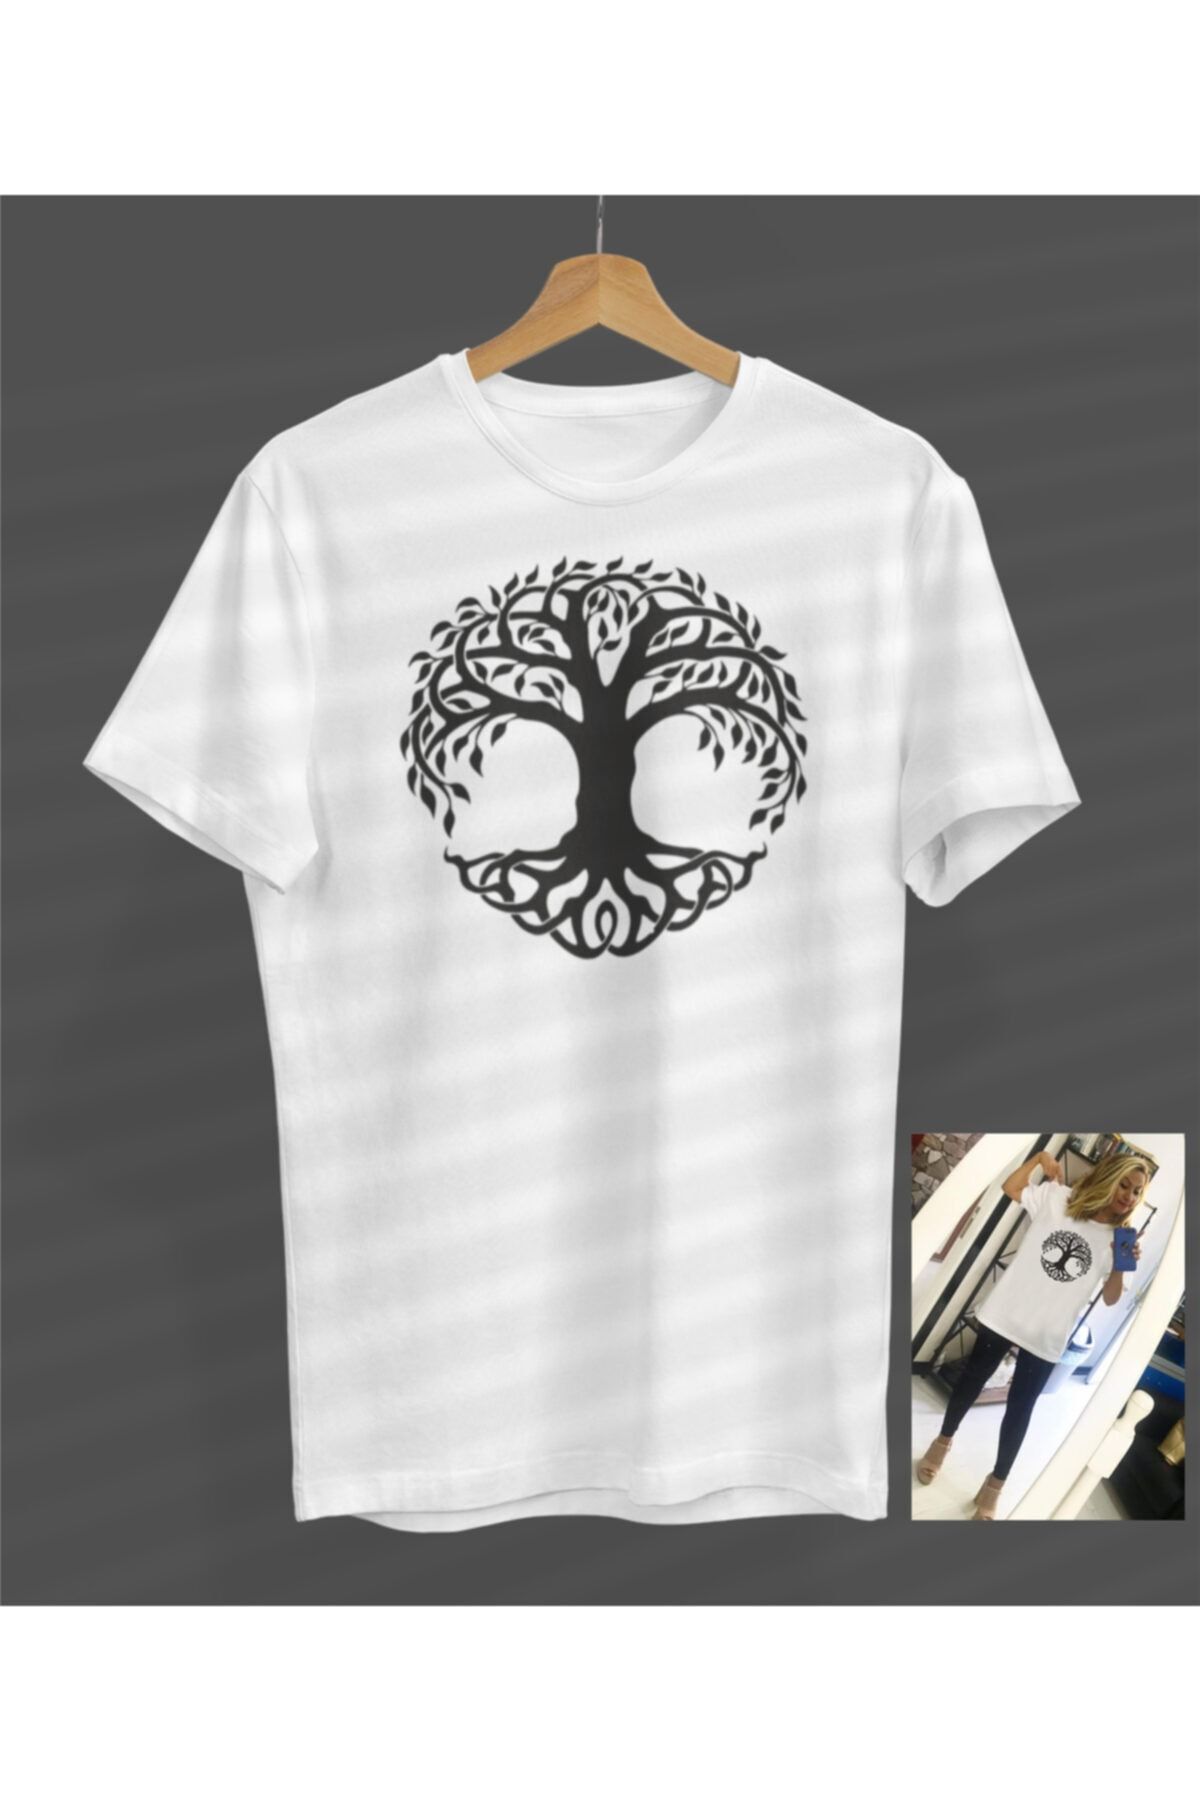 NOVUMUS Yaşam Ağacı Tasarım Baskılı Beyaz Yuvarlak Yaka Beyaz T-shirt Unisex